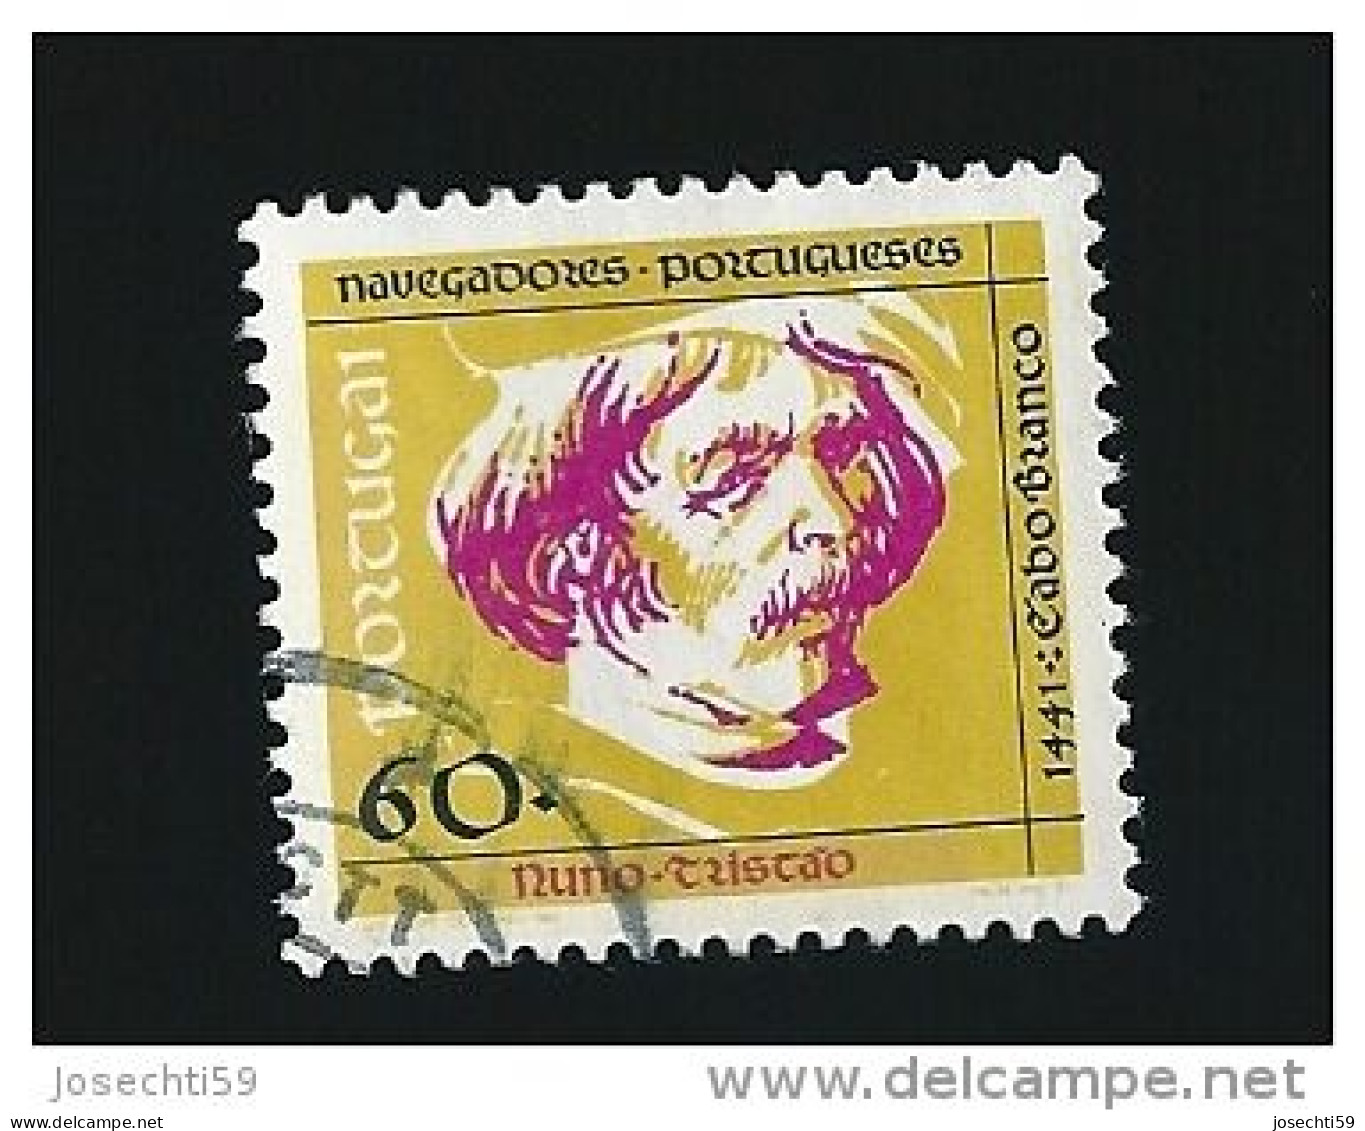 N° 1837 Navigateurs Portugais : Nuno Tristao  Timbre Portugal Oblitéré 1991 - Used Stamps